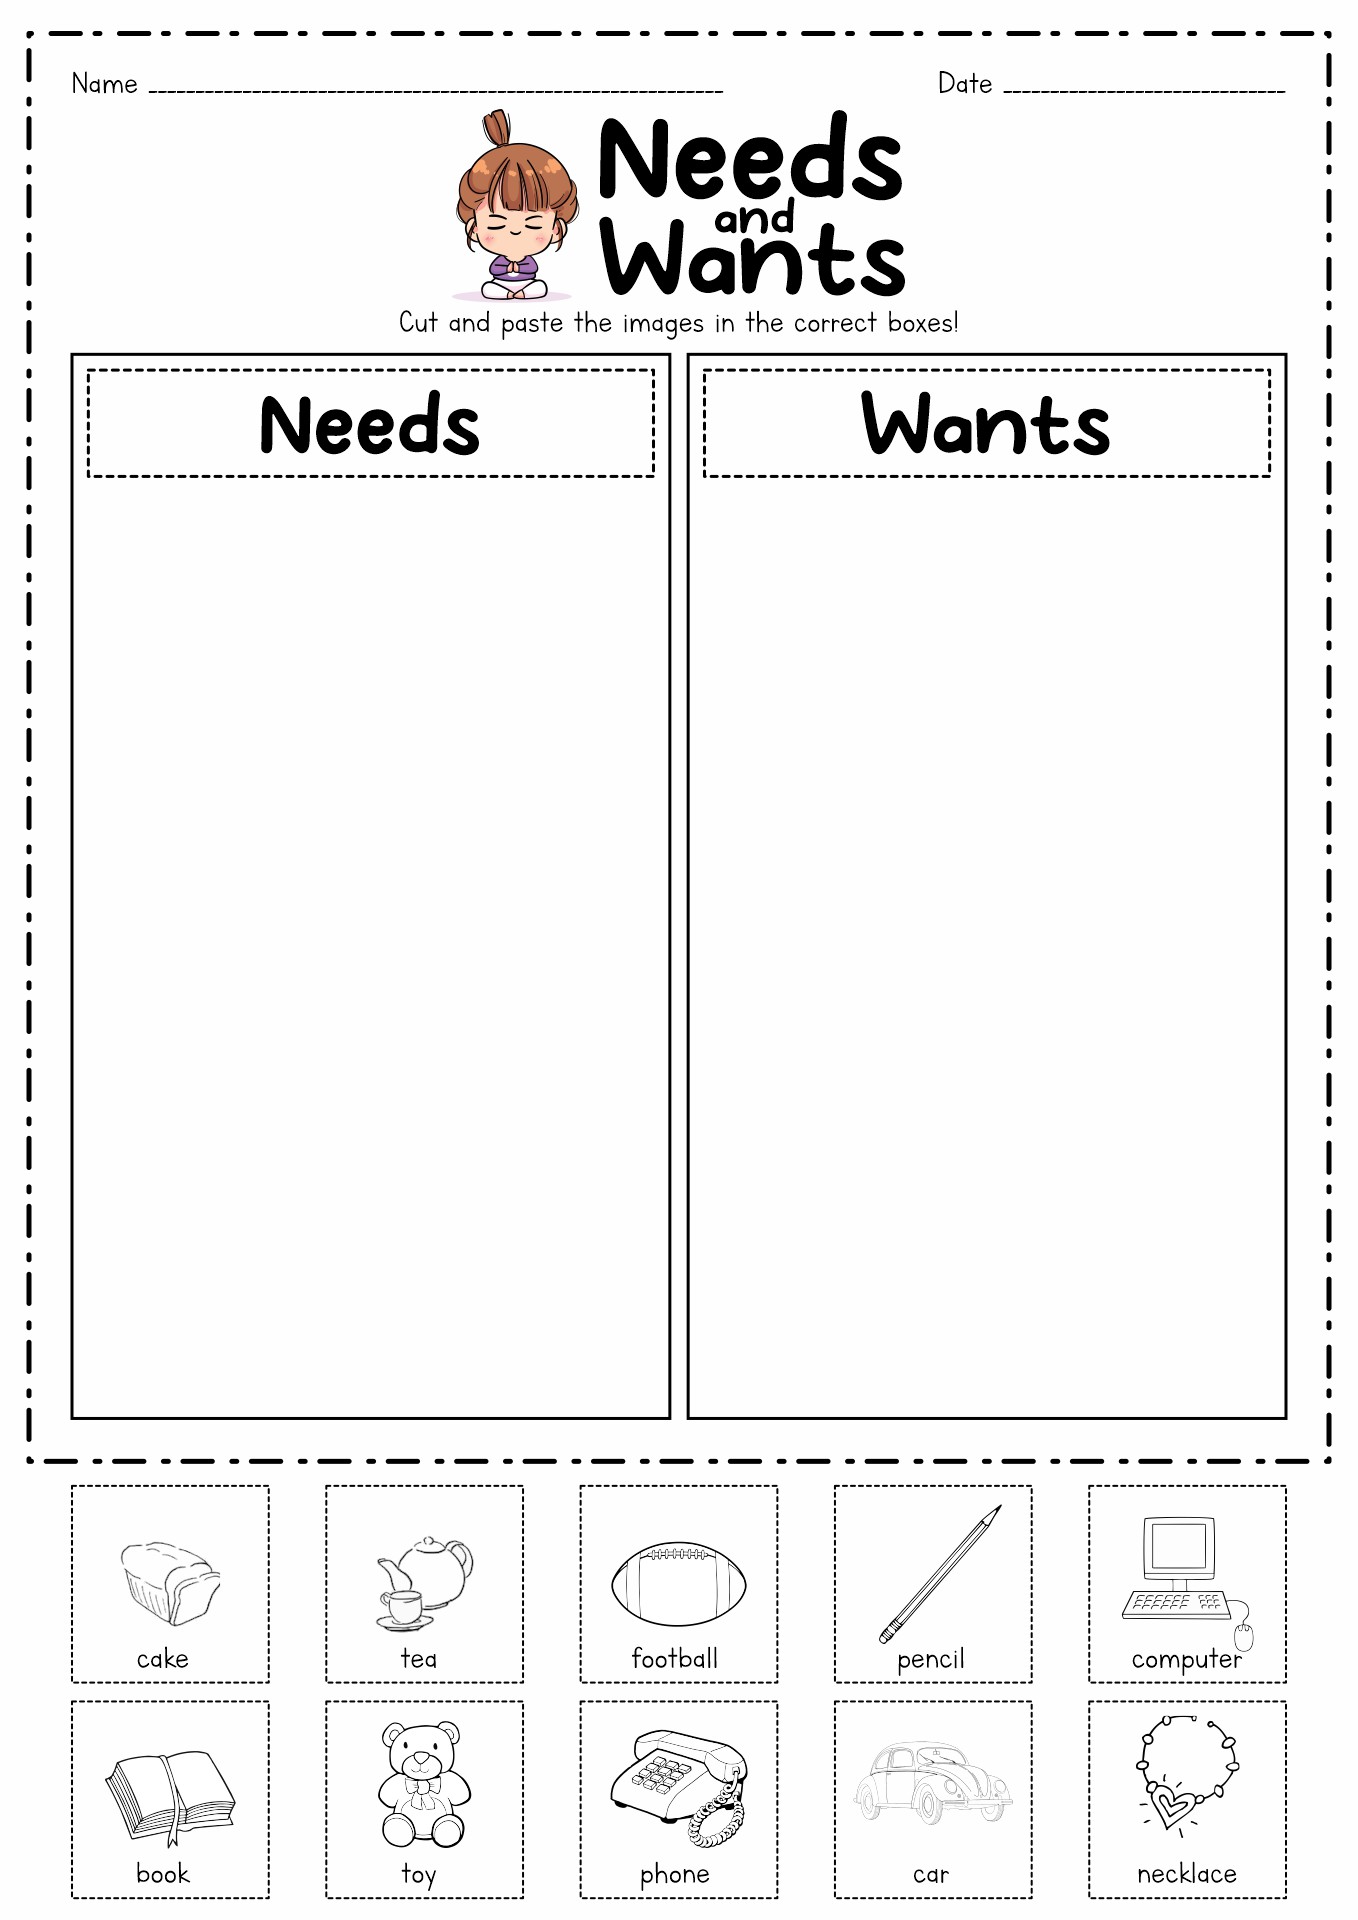 Needs vs Wants Worksheet Kindergarten Image